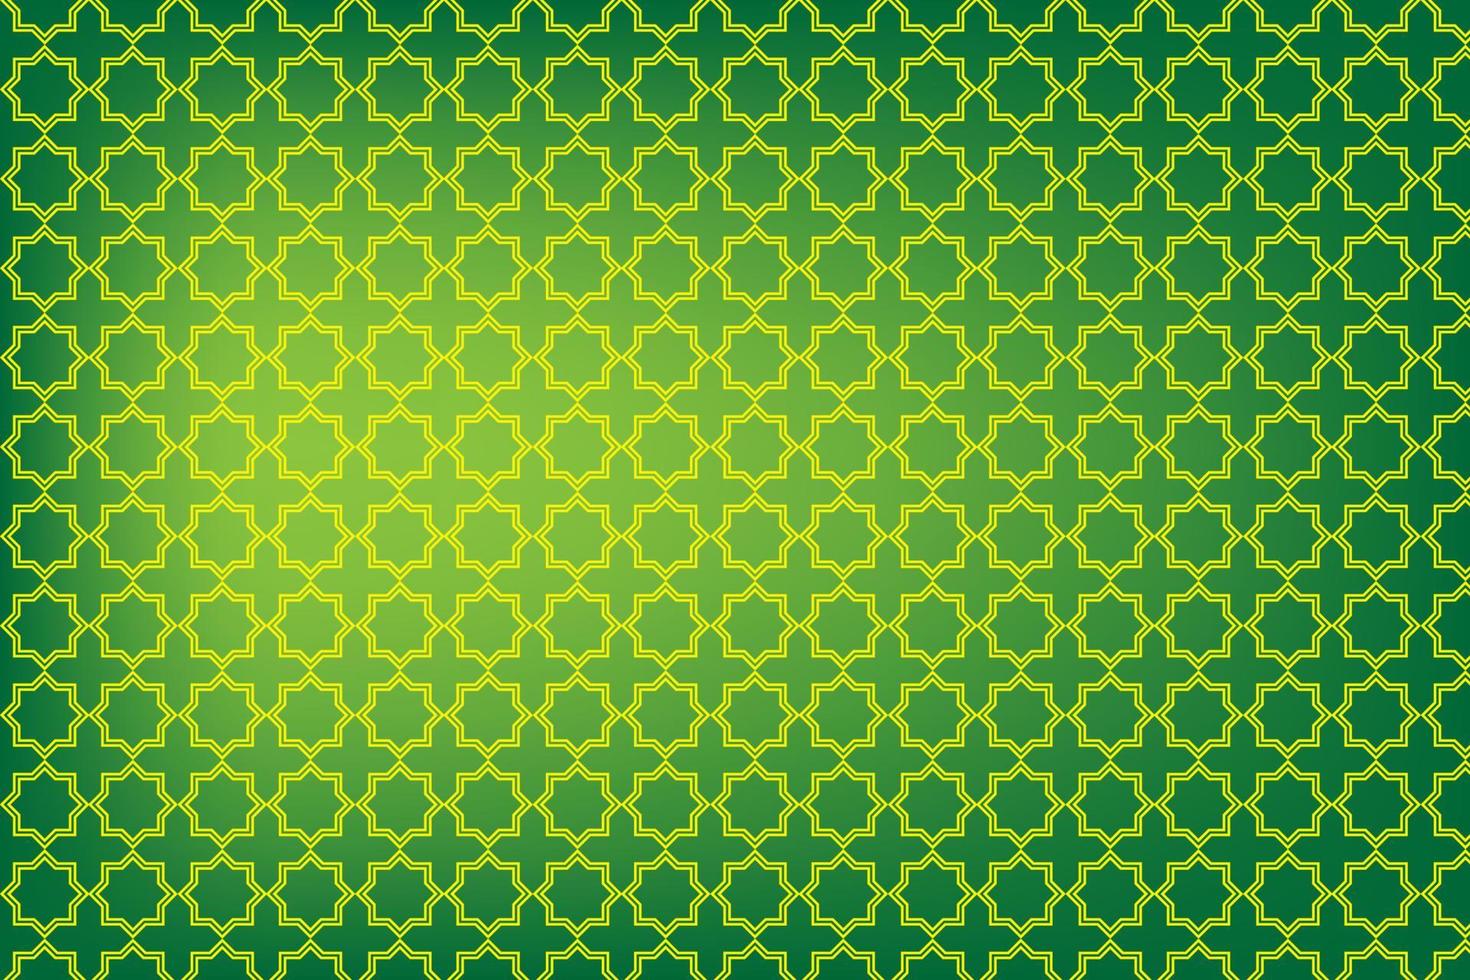 padrão islâmico de fundo, vetor de ornamento árabe e textura plana